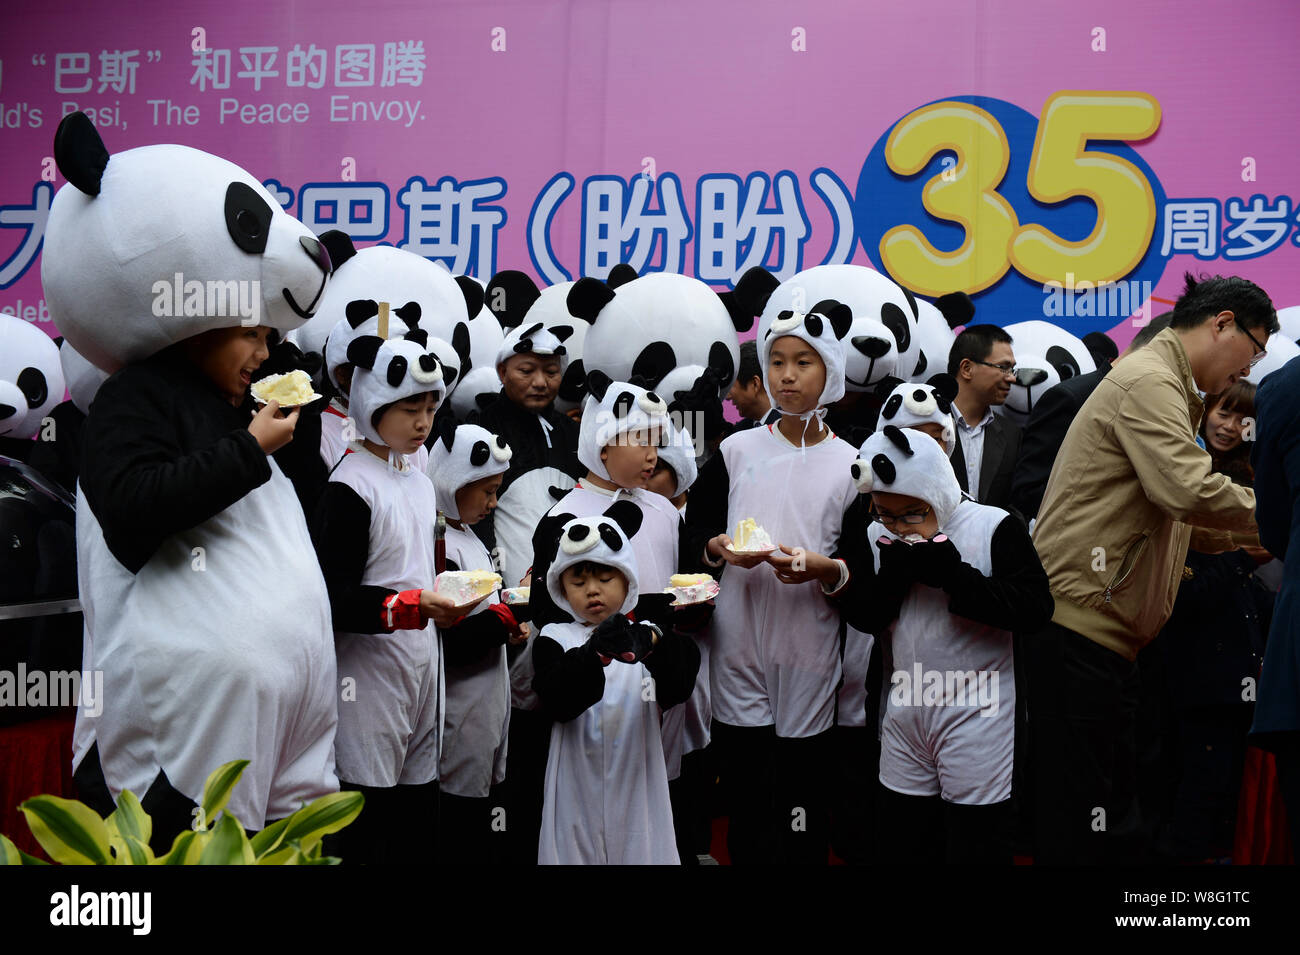 Les enfants vêtus de costumes du panda géant manger des gâteaux pendant une fête pour célébrer le panda géant femelle Basi's 35ème anniversaire au Shanghai Grand Panda recher Banque D'Images